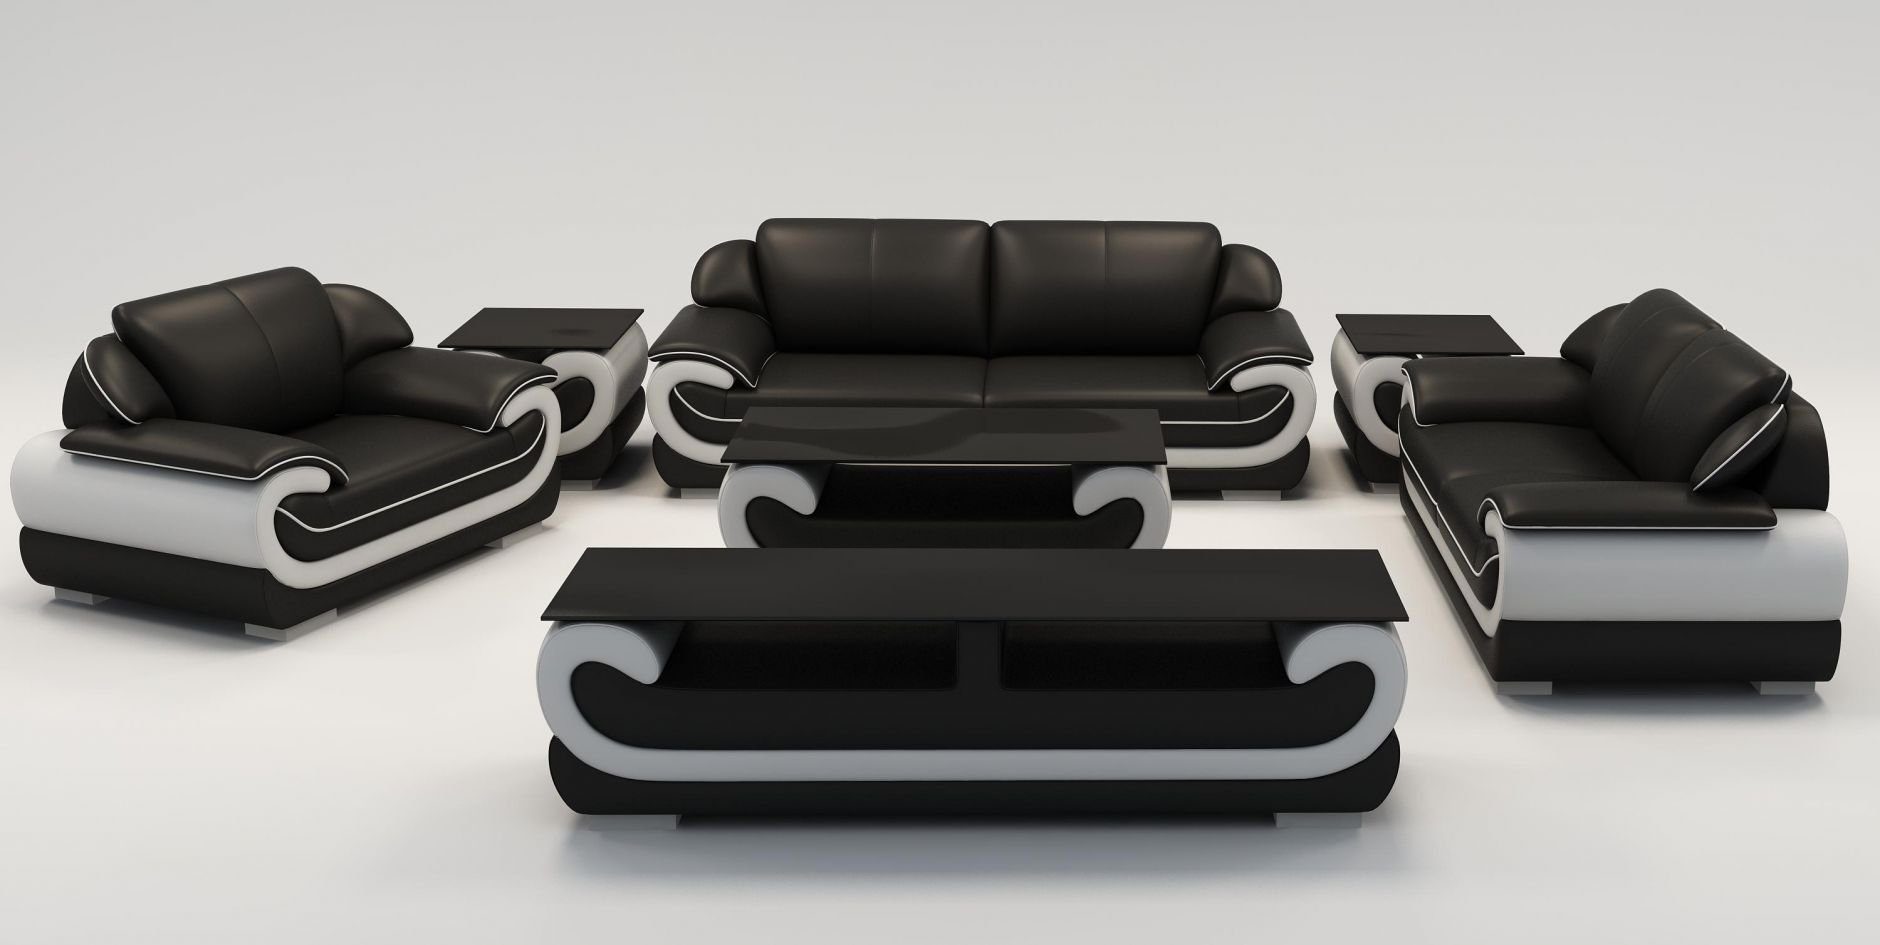 JVmoebel Sofa Sofagarnitur 3+2+1 Sitzer + Hocker Set Polstersofa Couch Designersofa, Made in Europe Schwarz/Weiß | Alle Sofas